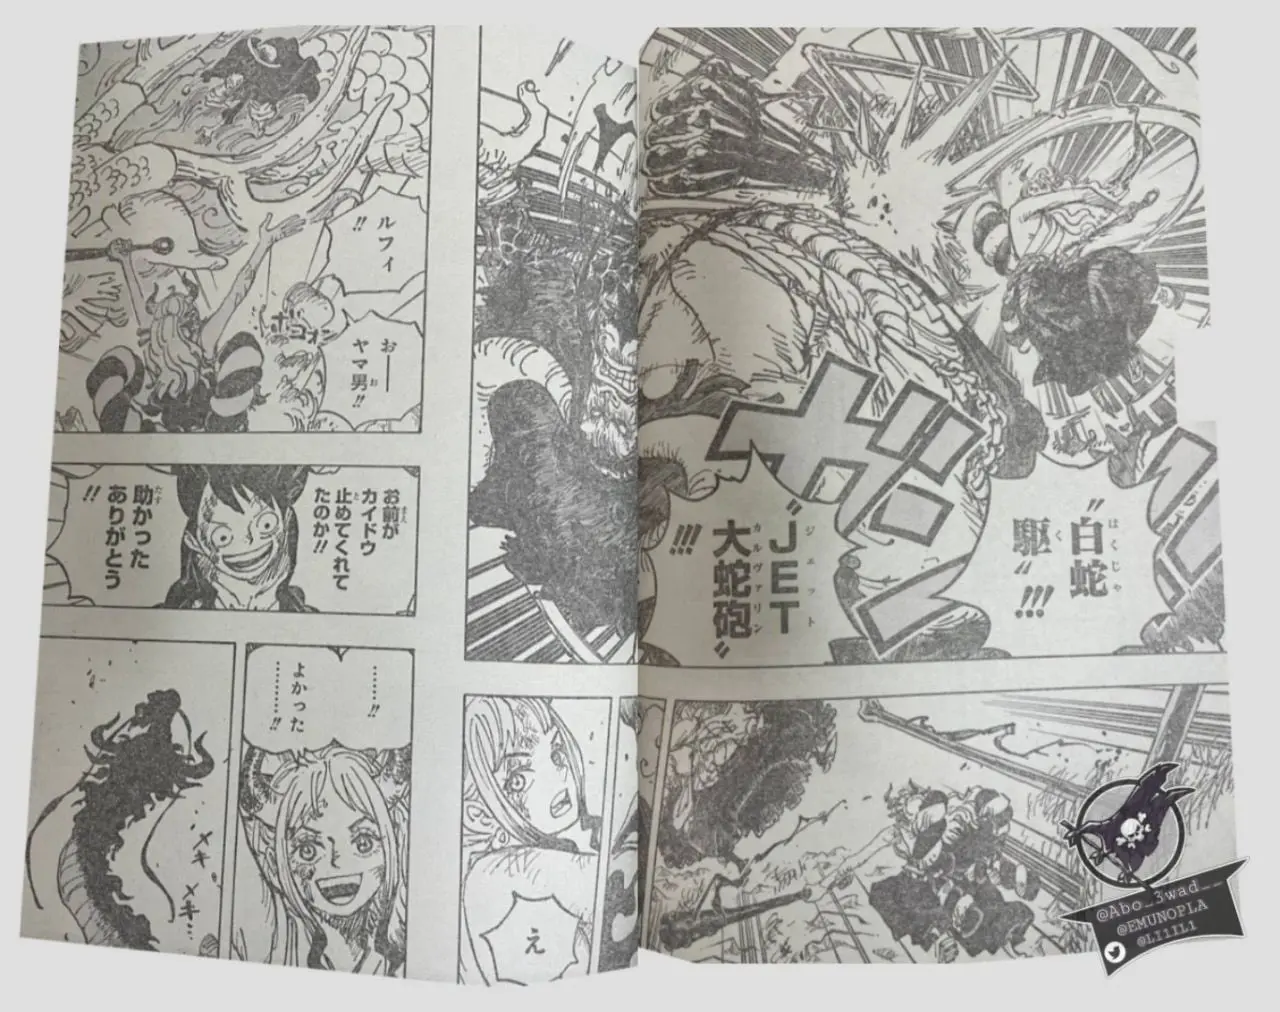 One Piece Manga 1025 Spoiler 013 1.jpg One Piece 1025 Spoilers: Luffy & Yamato Vs Kaido!